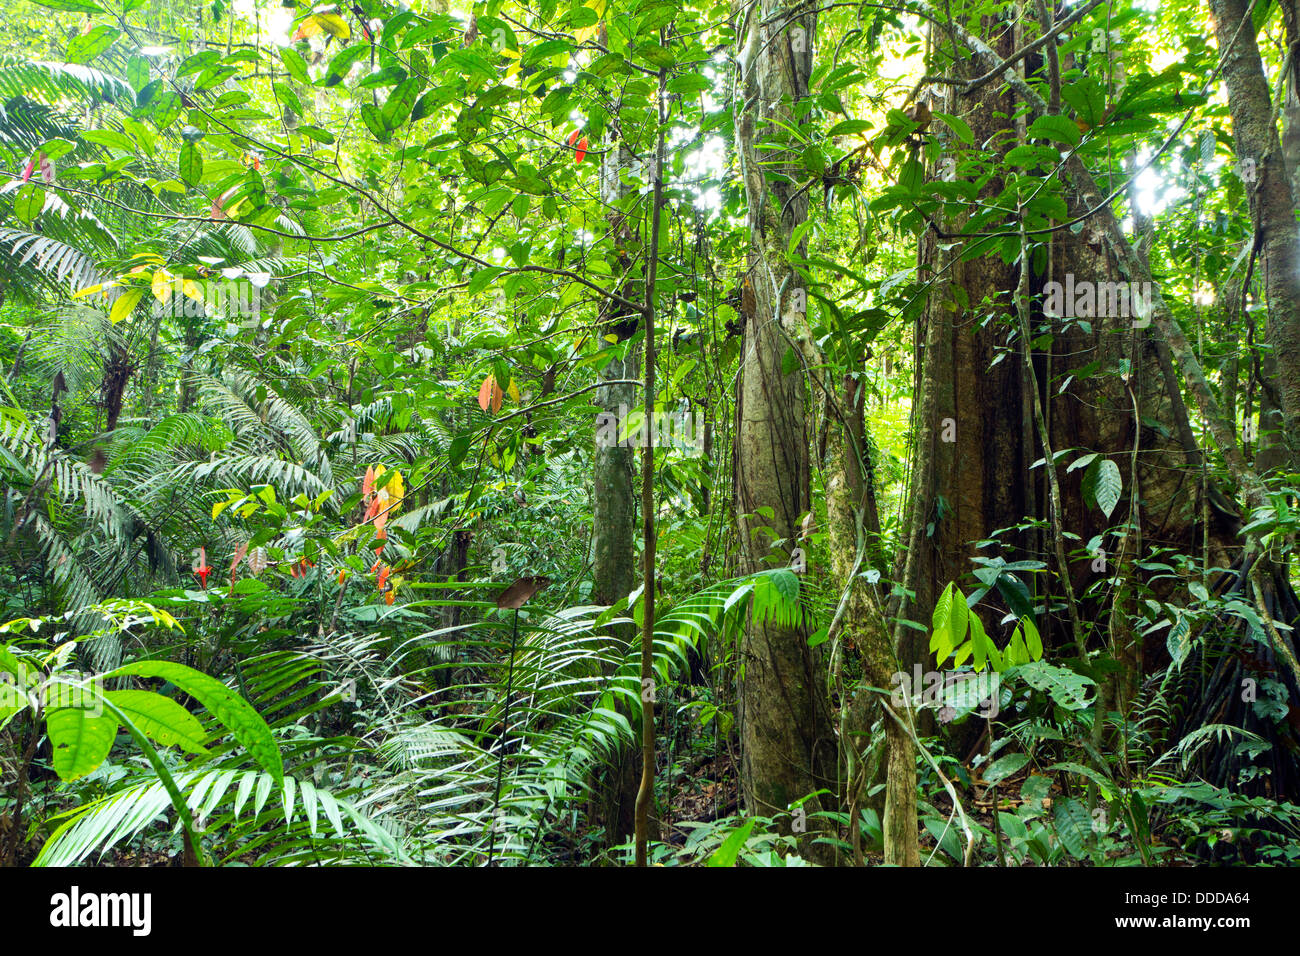 Baum mit Strebepfeiler Wurzeln wachsen im primären Regenwald im ecuadorianischen Amazonasgebiet Stockfoto